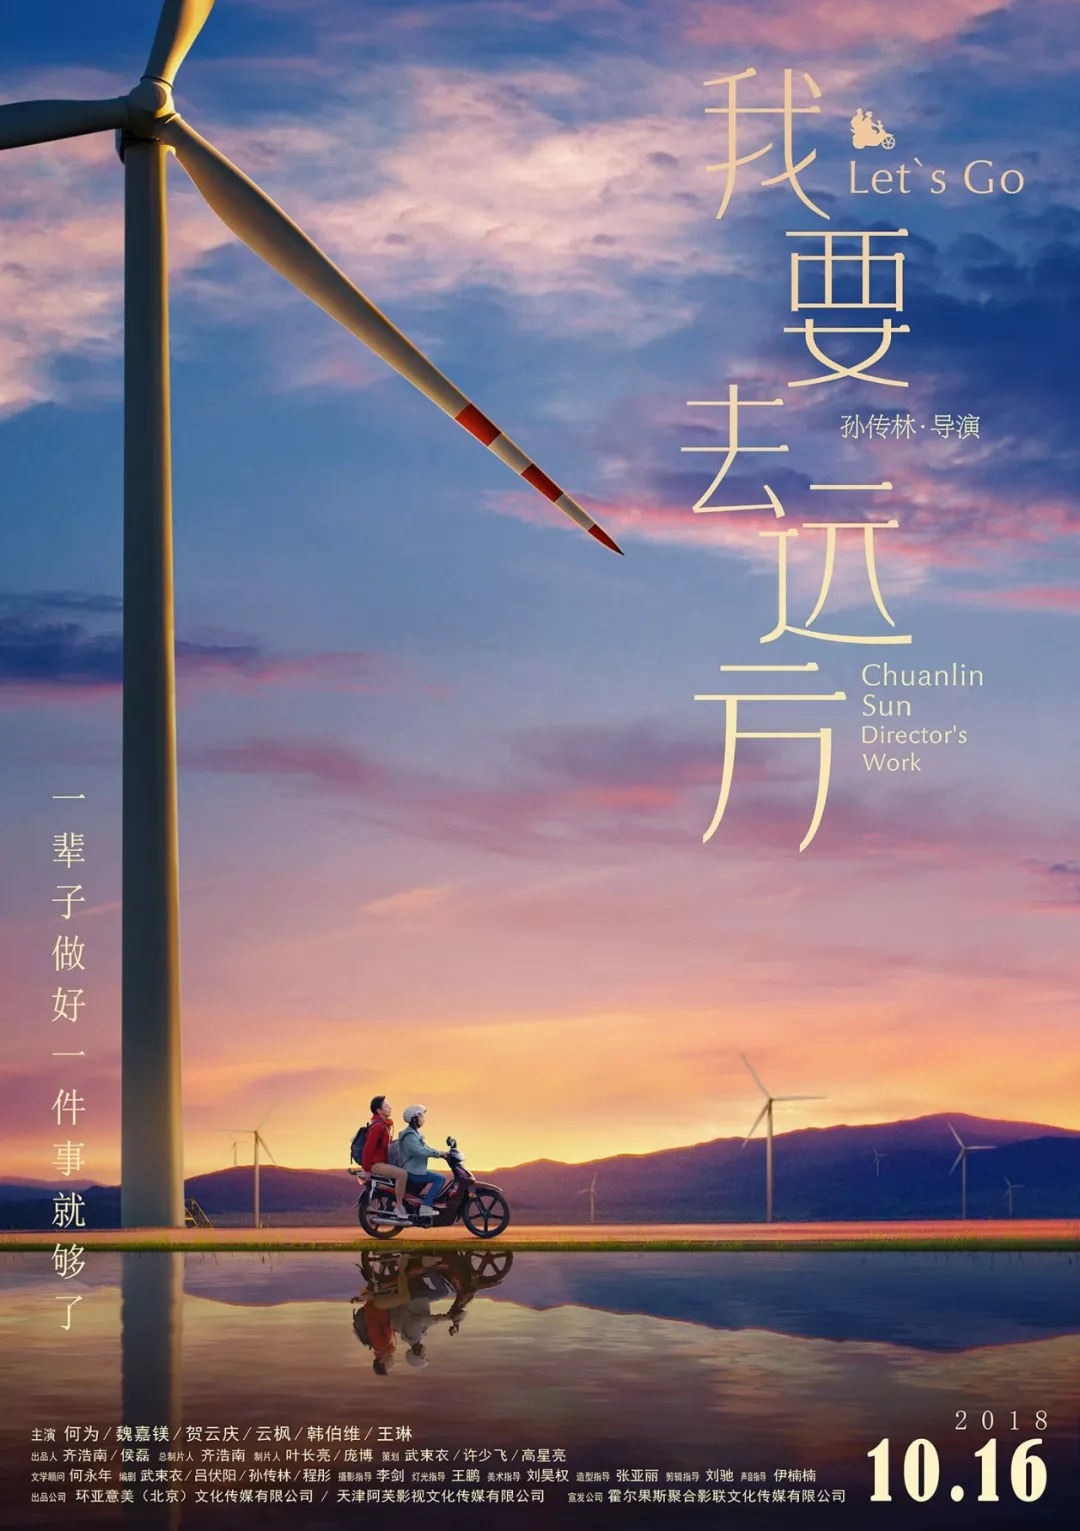 《我要去远方》正式发布"迎霞出发"版定档海报,并 宣布定档10月16日